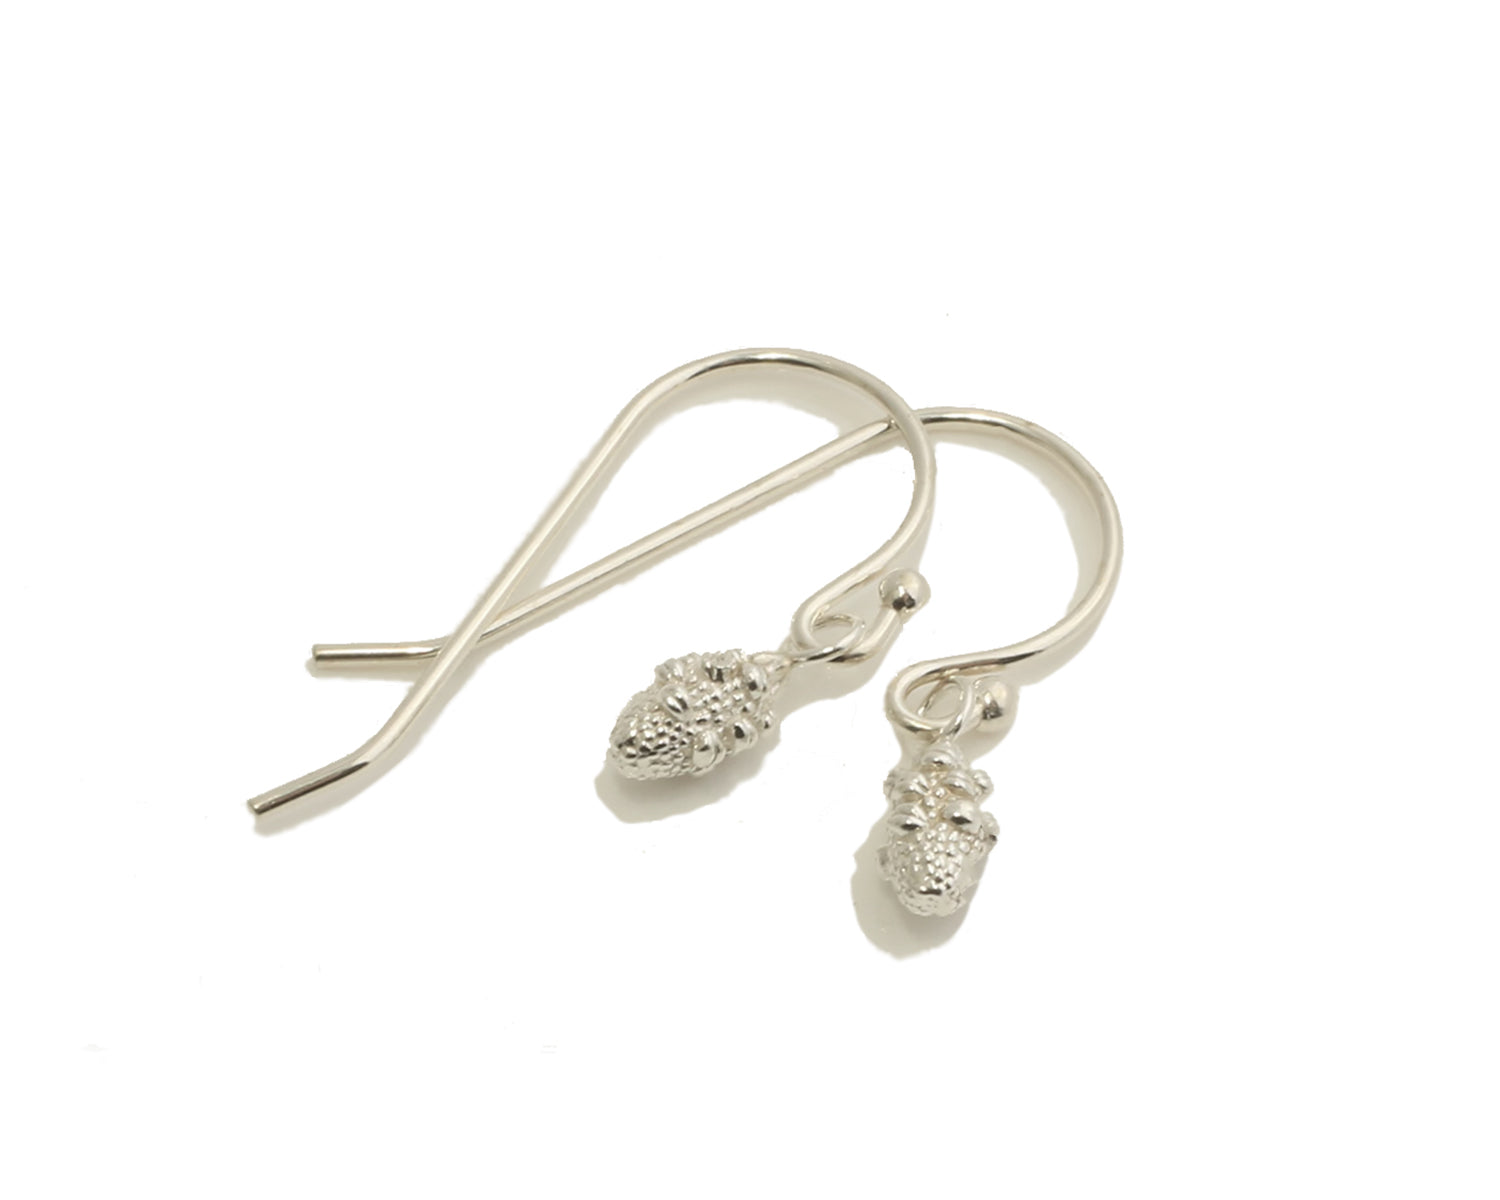 Banksia Pod earrings